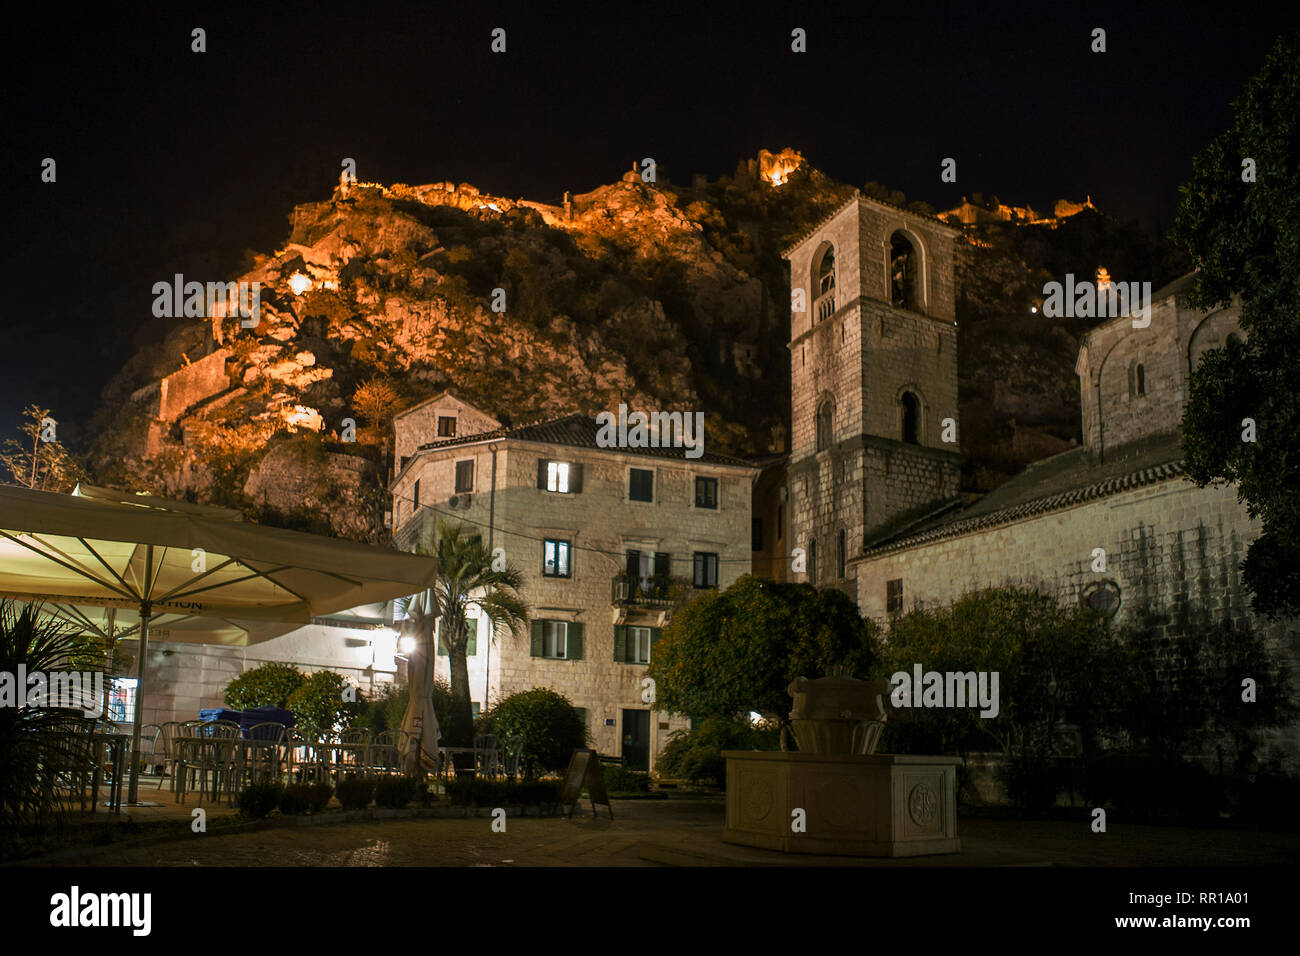 Trg od Drva (Holz), St. Mary's Stiftskirche und die Stadtbefestigung oben beleuchtet bei Nacht: Kotor, Montenegro Stockfoto